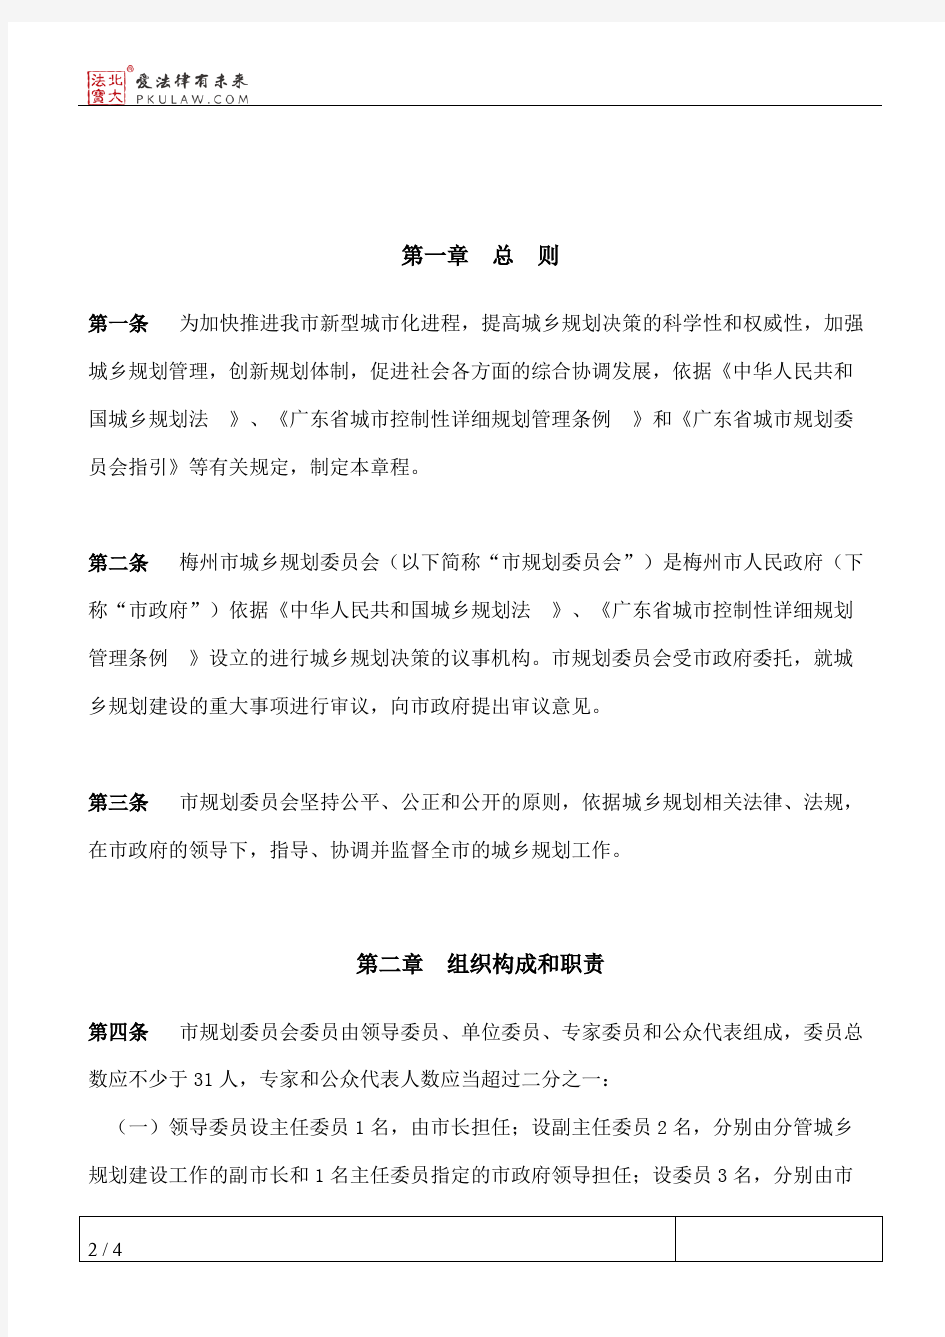 梅州市人民政府关于印发《梅州市城乡规划委员会章程》的通知